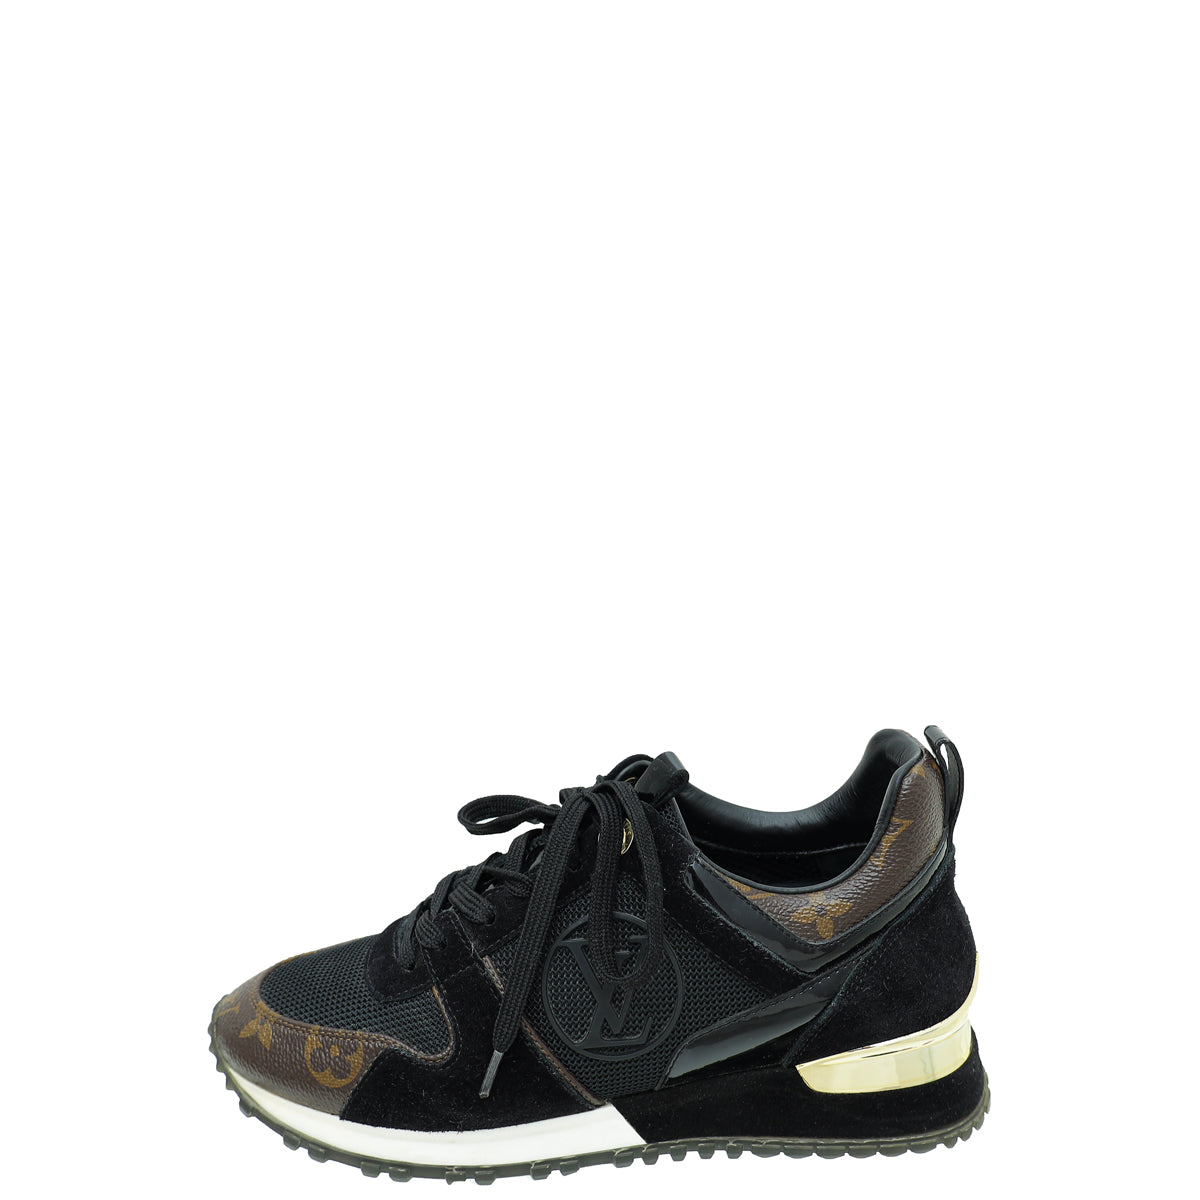 Louis Vuitton Run Away Sneaker BLACK. Size 36.0